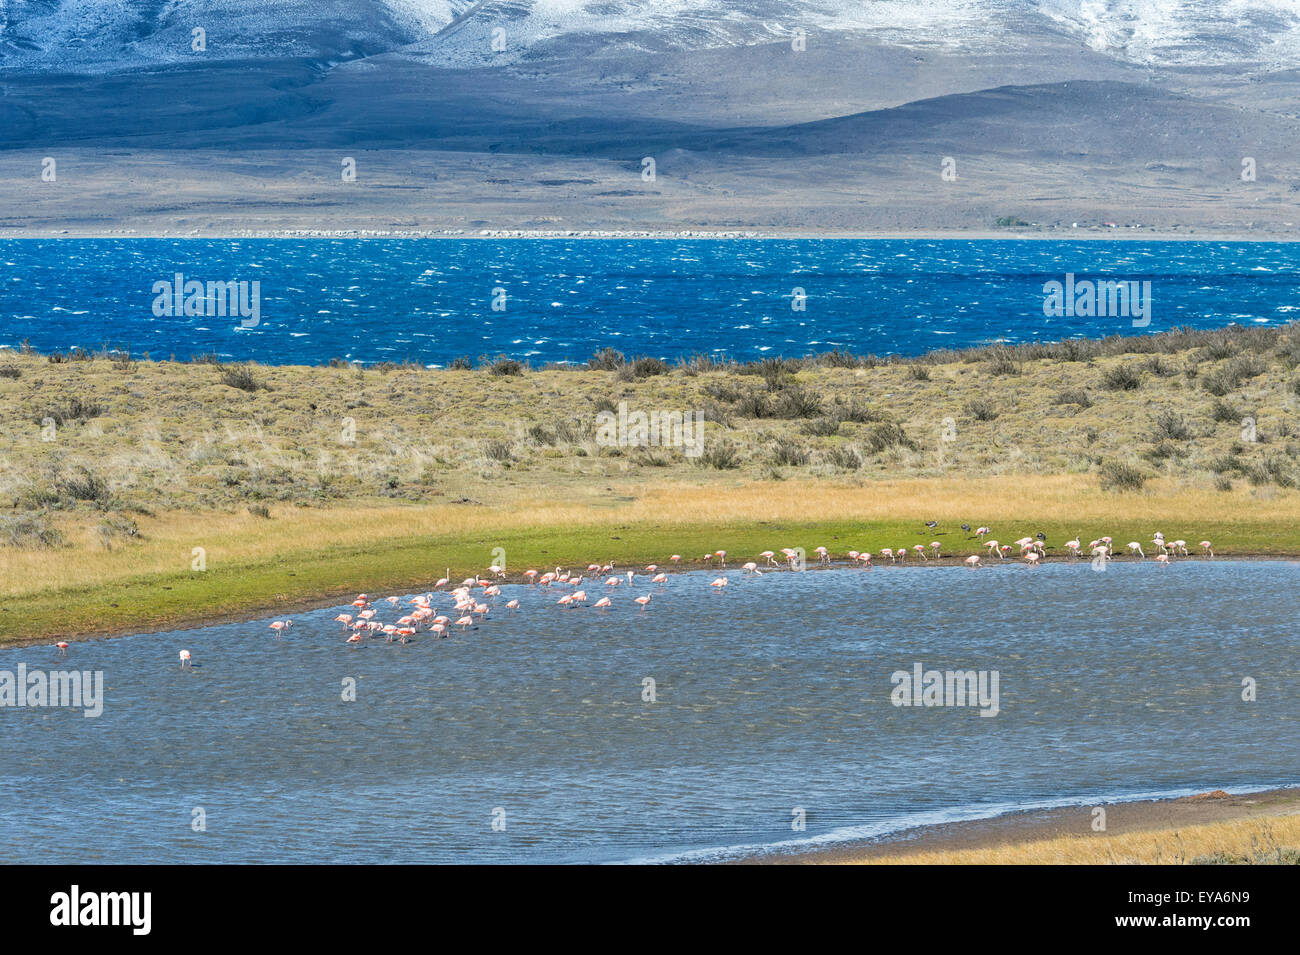 Les flamants du Chili (Phoenicopterus chilensis), dans le Parc National Torres del Paine, Patagonie chilienne, Chili Banque D'Images